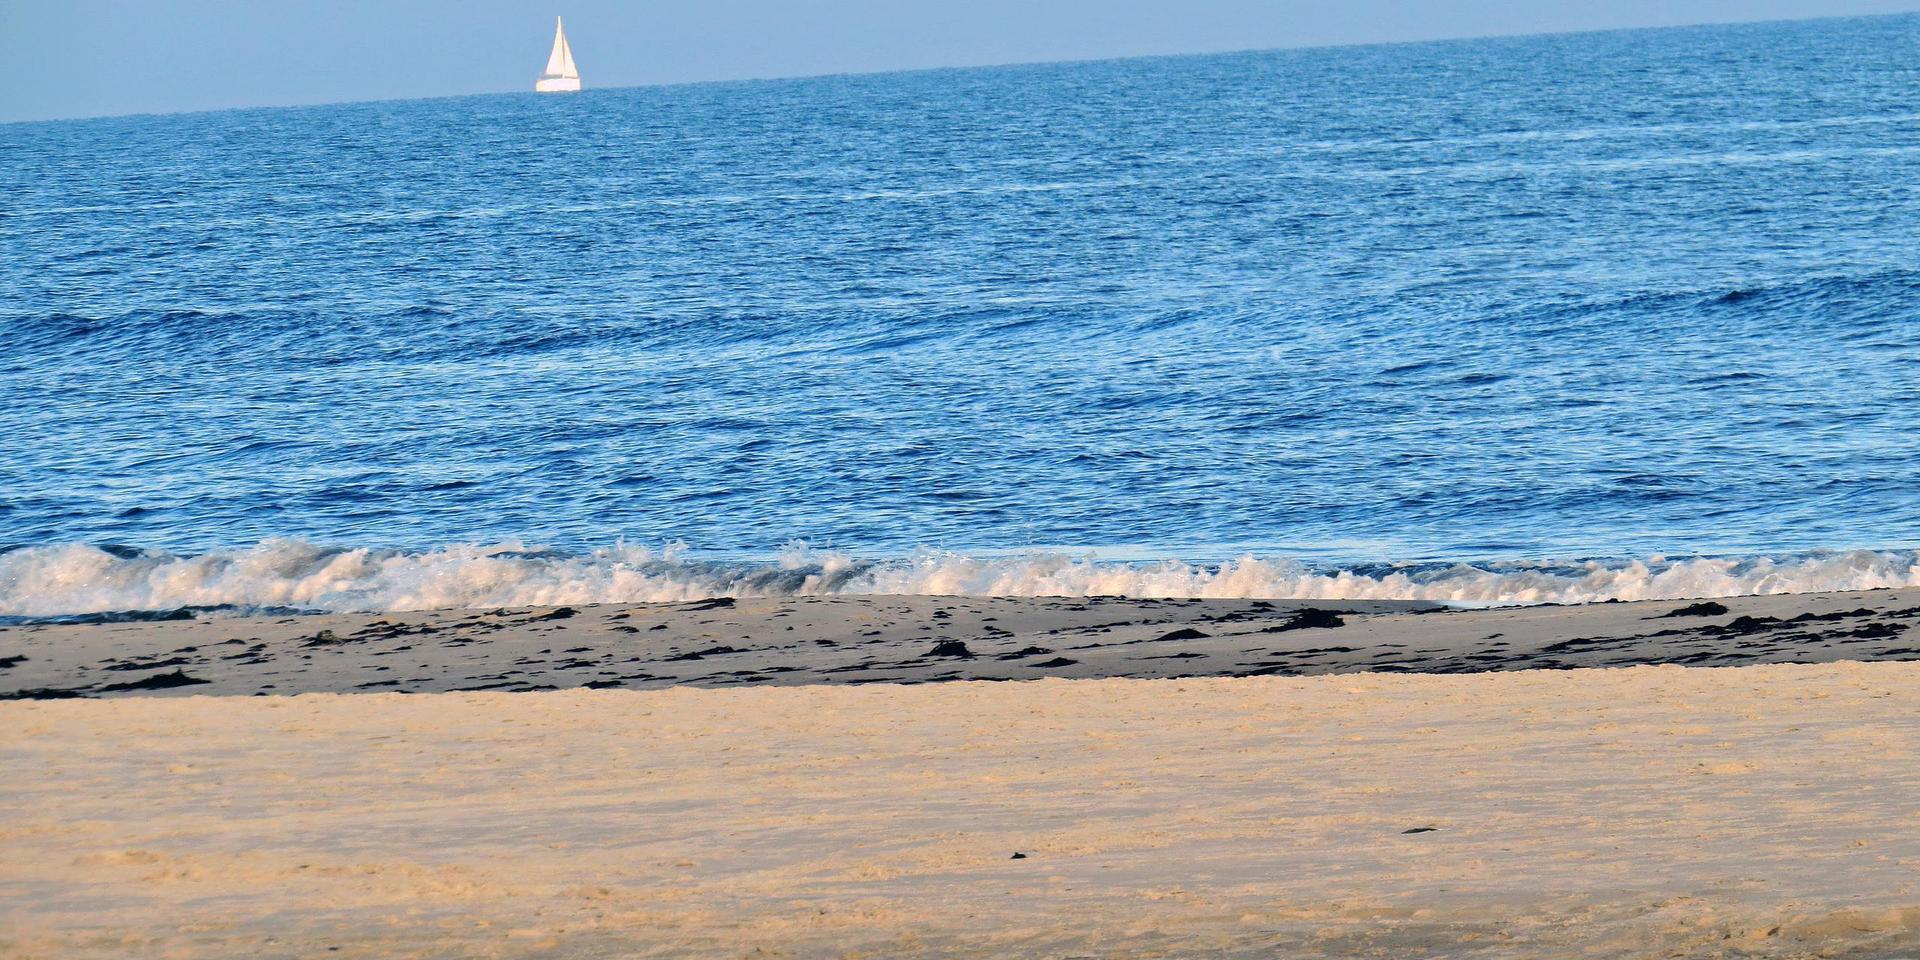 En ensam segelbåt på synranden, den rör sig knappt. Här finns de farliga sandrevlarna. 